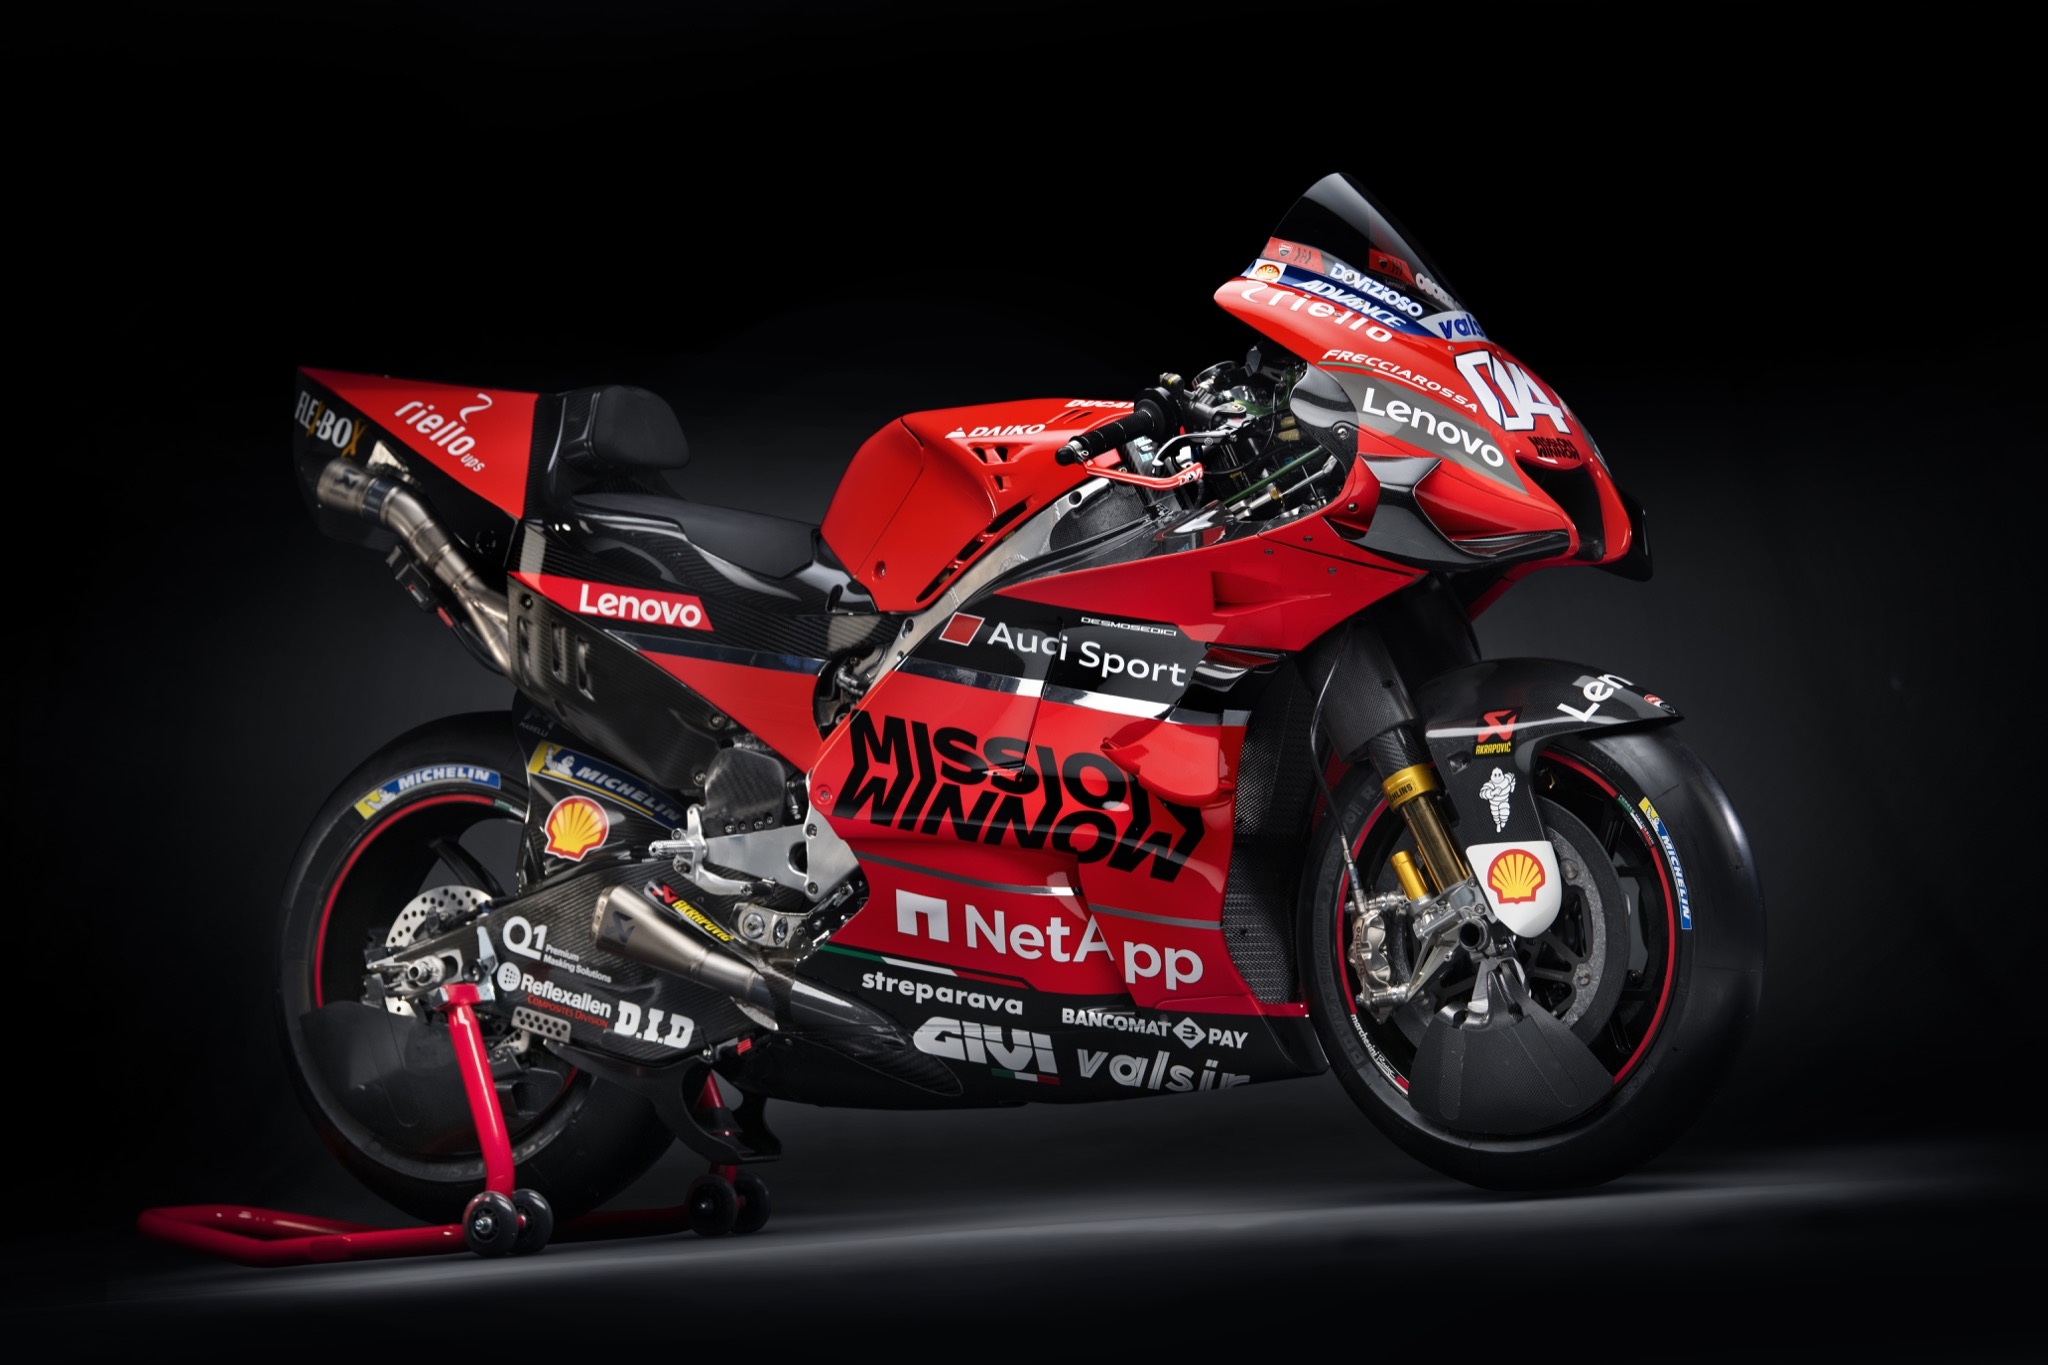 Ducati MotoGP Team 2020 - Andrea Dovizioso & Danilo Petrucci